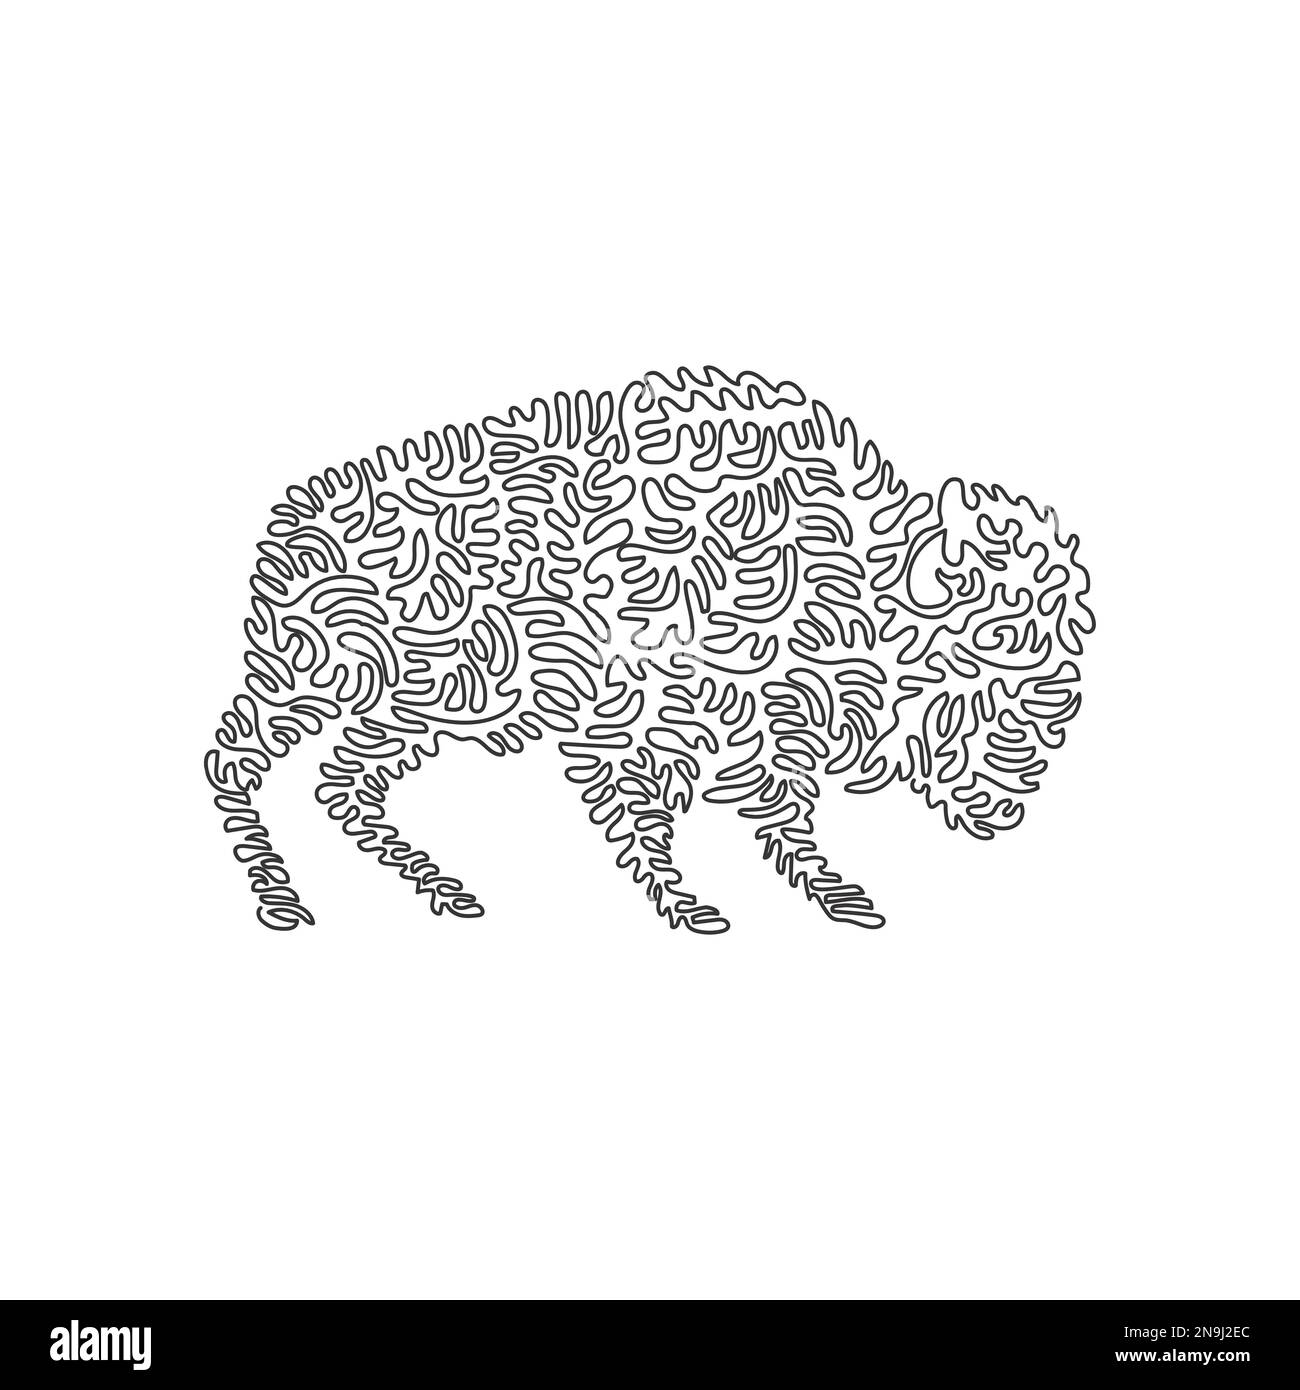 Un seul dessin de l'art abstrait du bison effrayant Ligne continue dessin graphique dessin vectoriel illustration de bison énorme et musclé pour icône Illustration de Vecteur